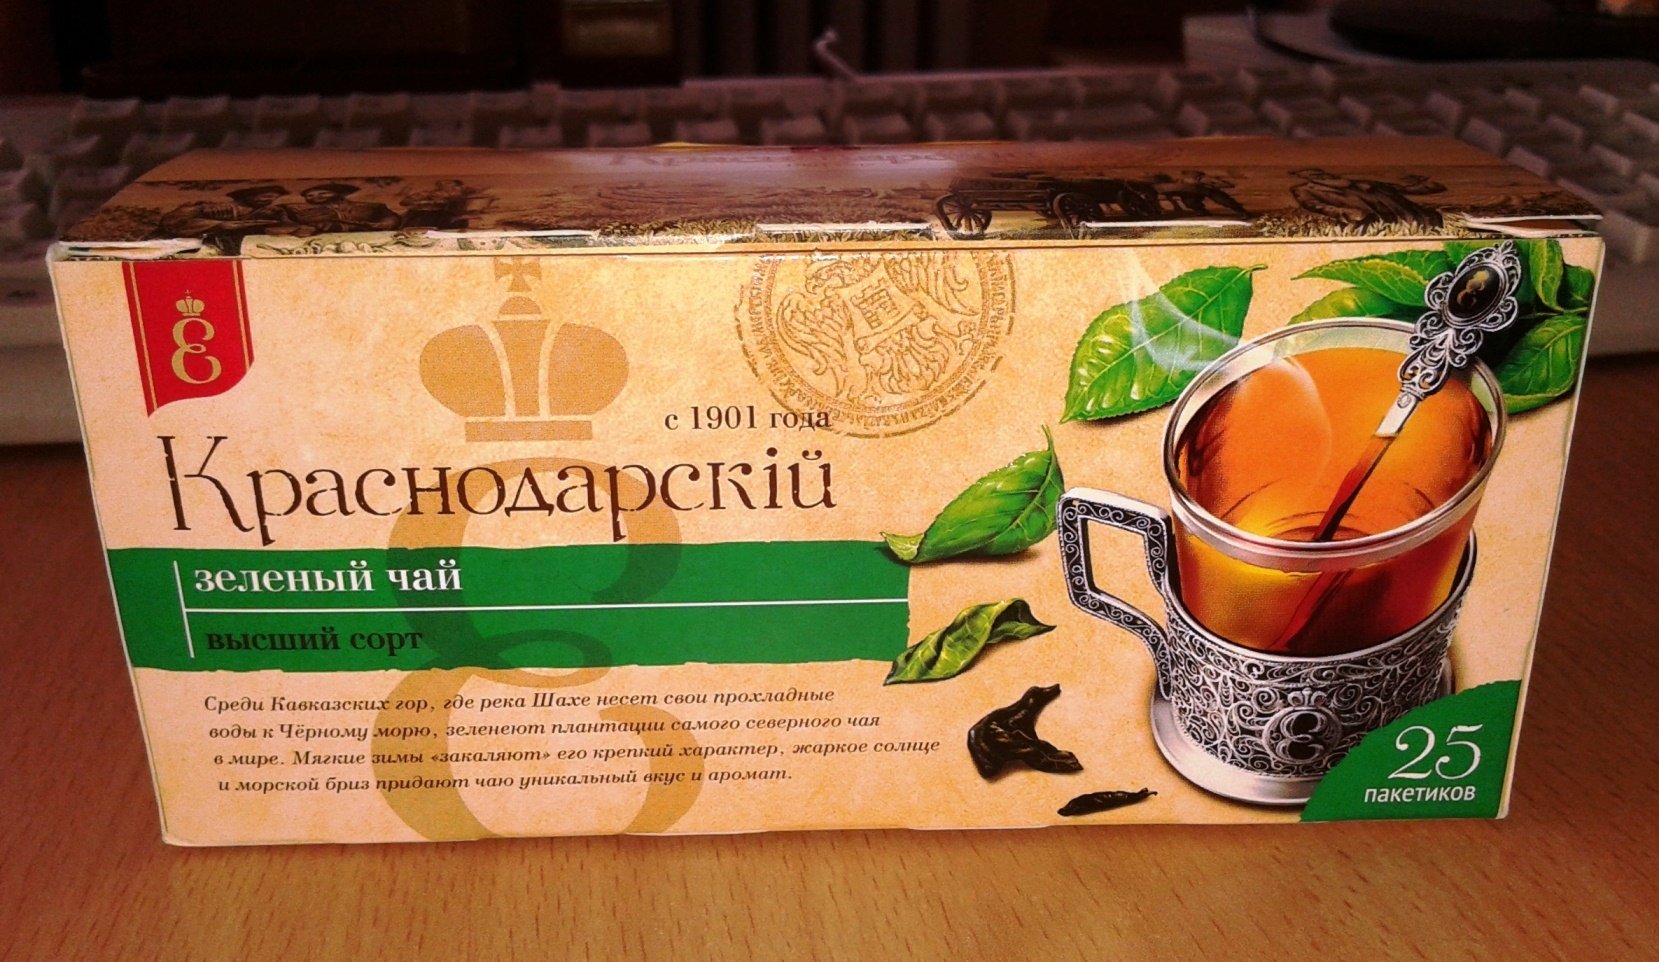 Купить чай от производителя. Краснодарский чай. Краснодарский зеленый чай. Краснодарский чай в пакетиках. Краснодарский зеленый чай в пакетиках.